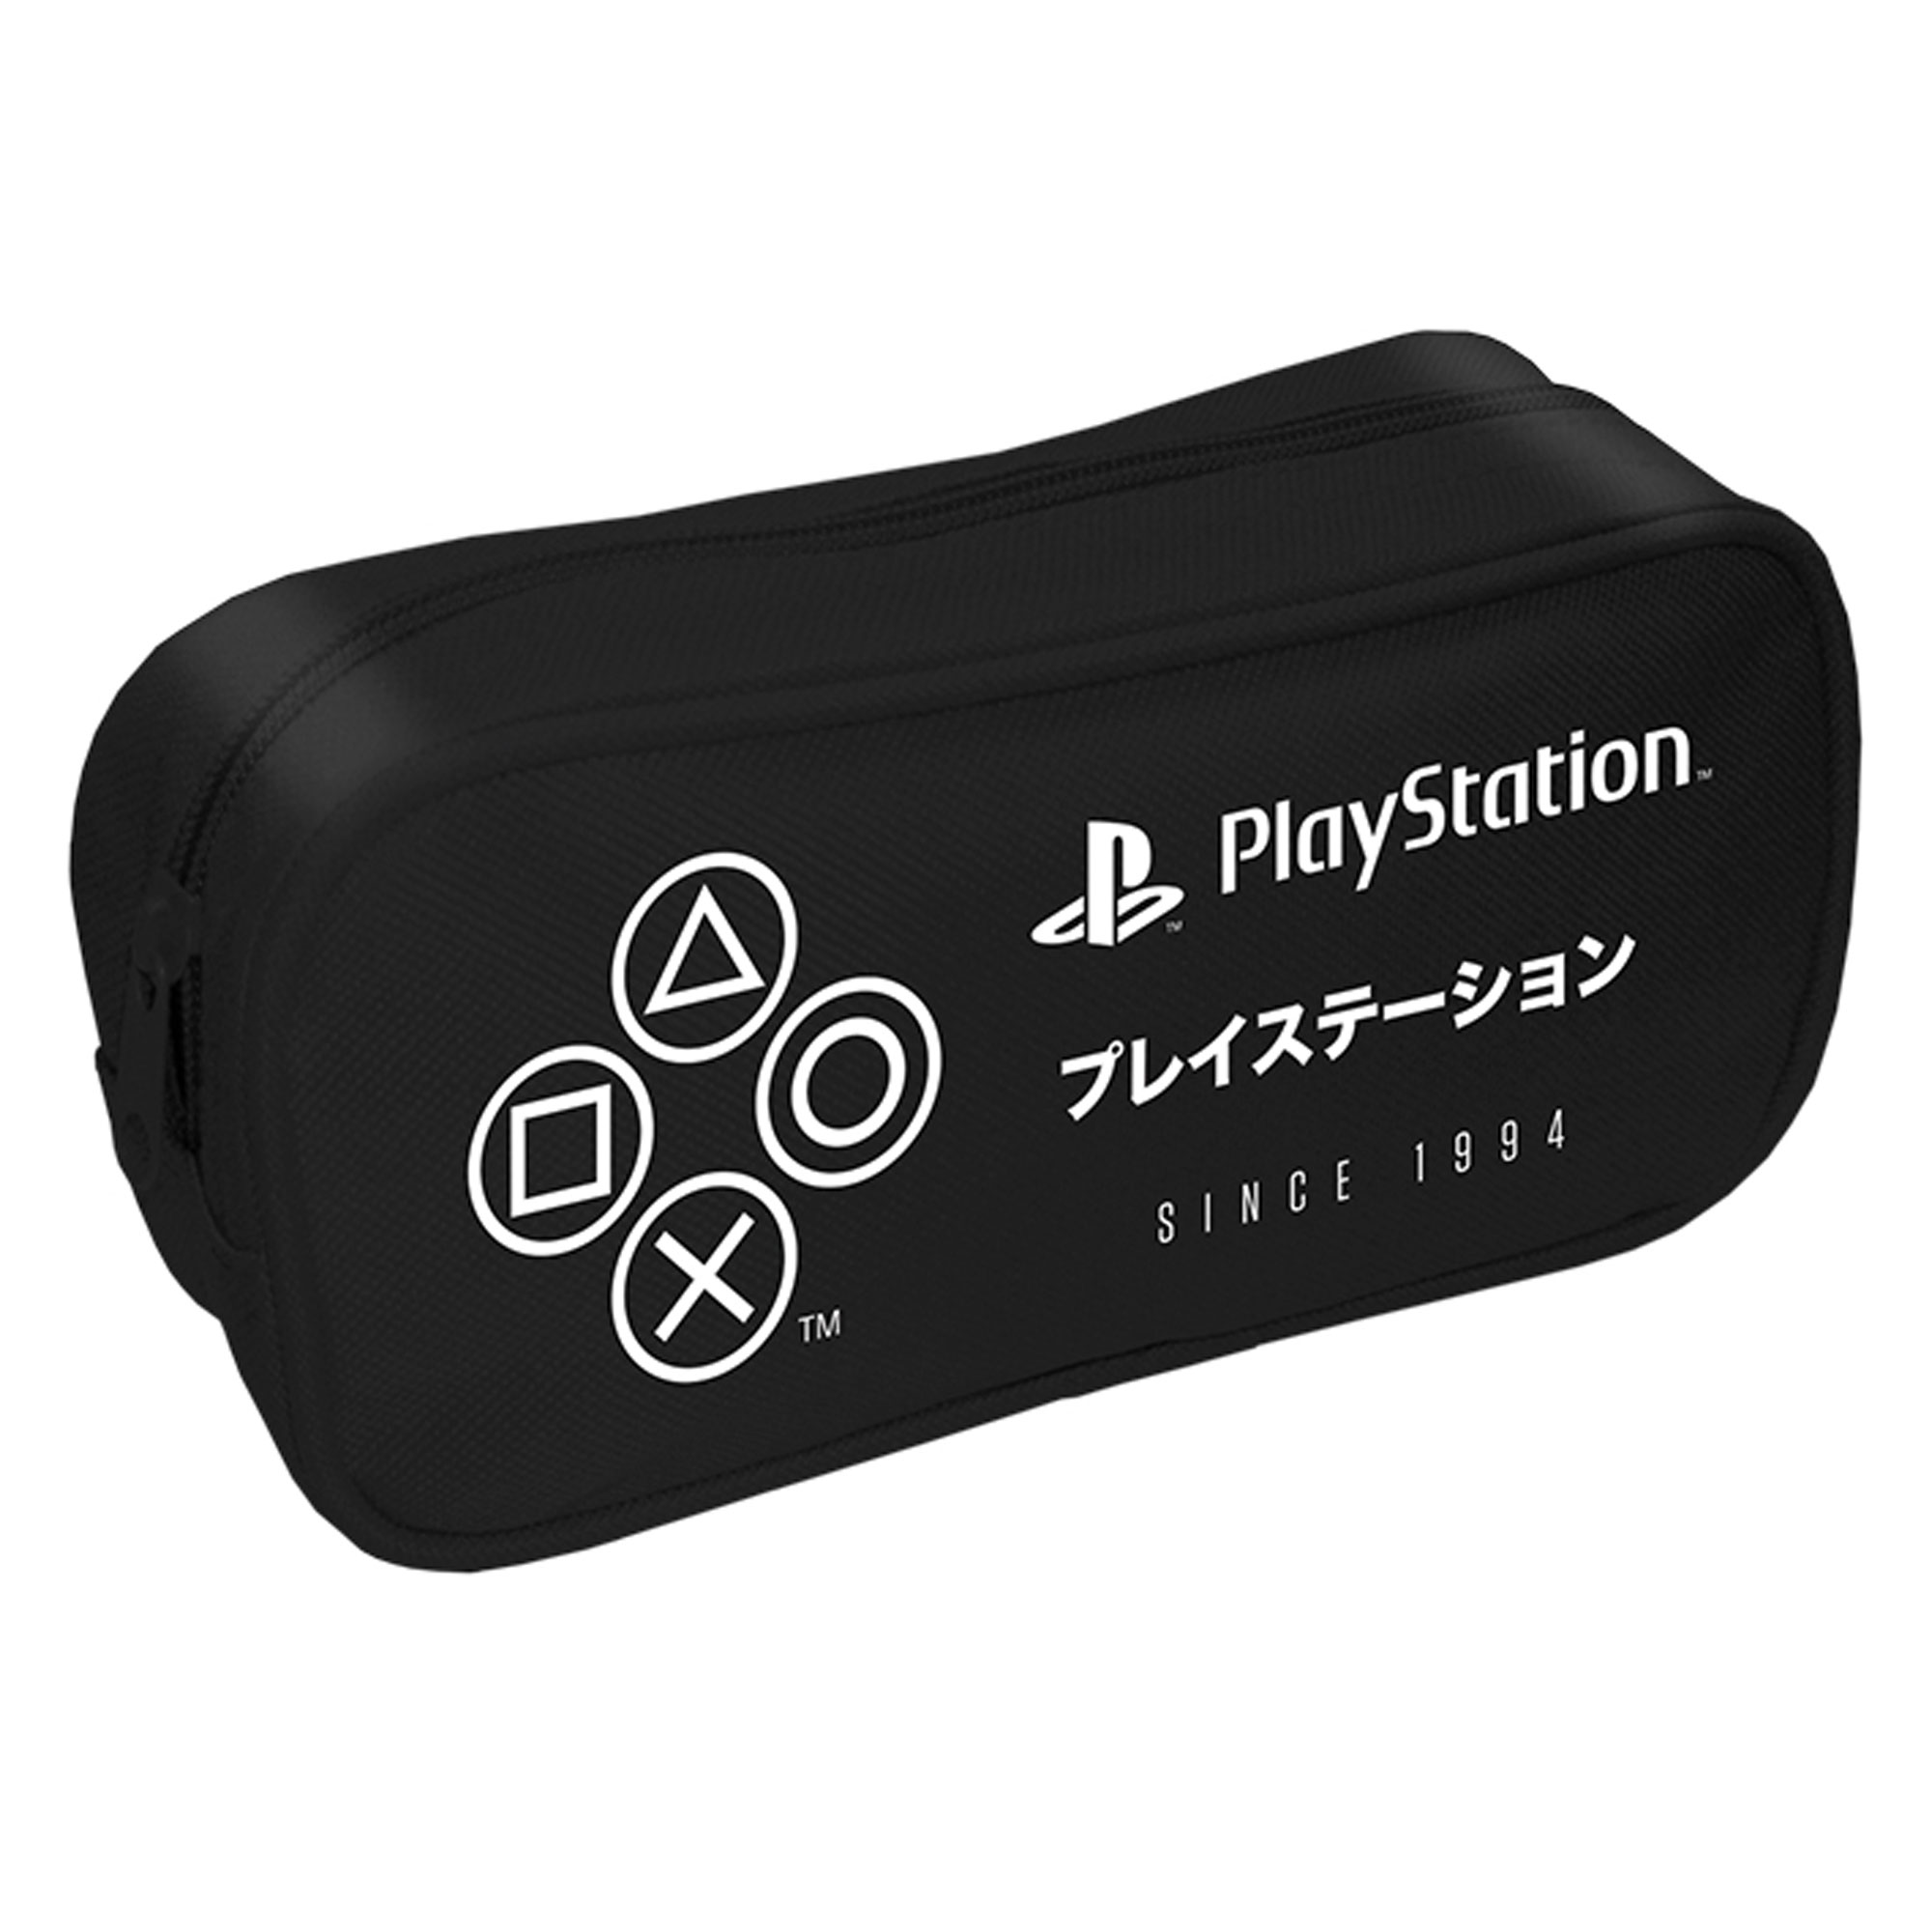 black - Playstation